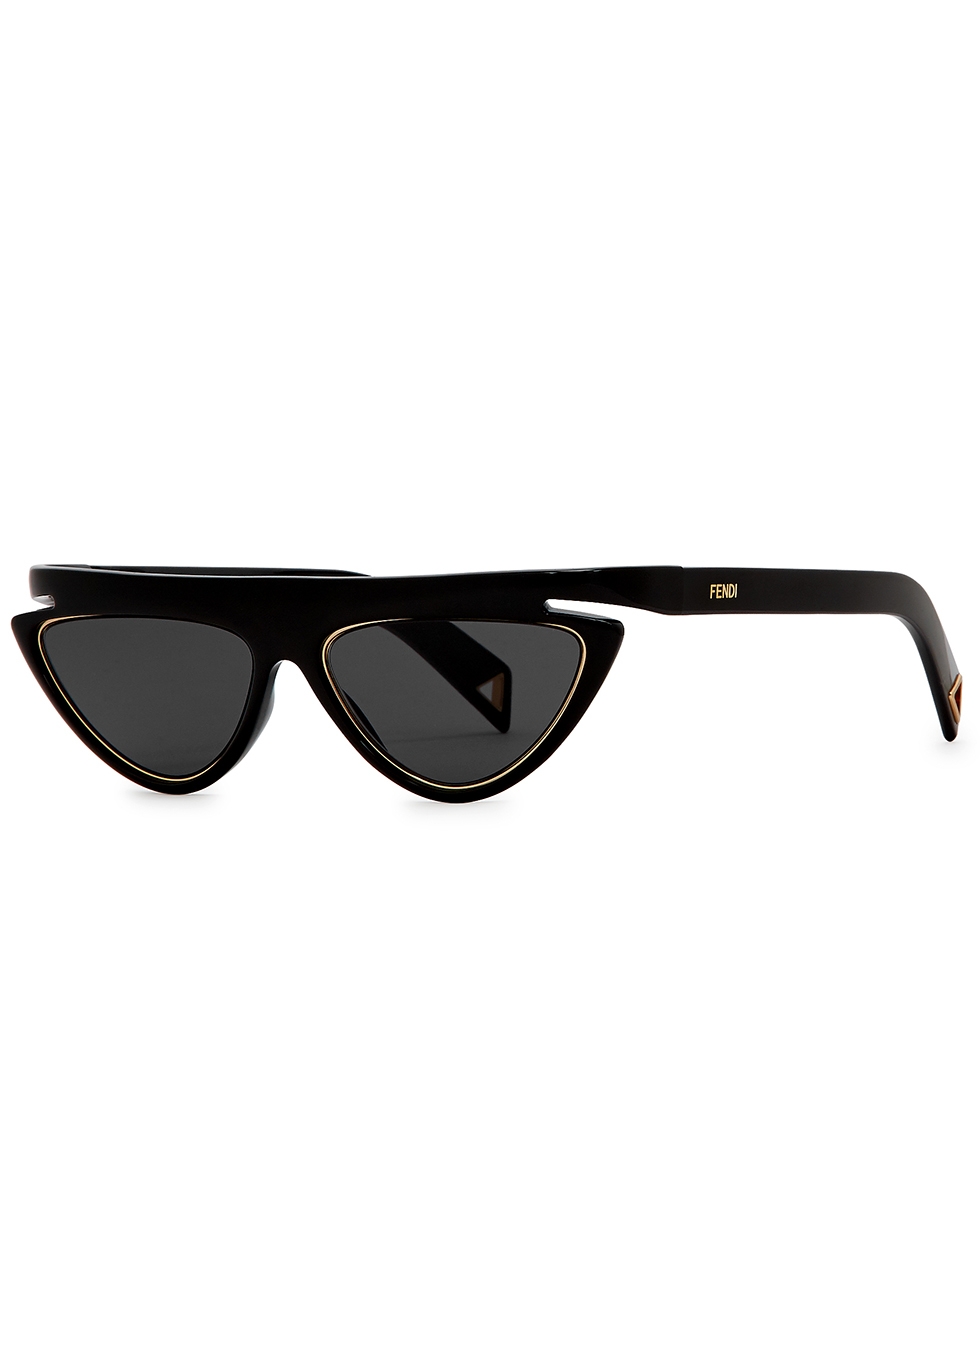 cat-eye sunglasses - Harvey Nichols